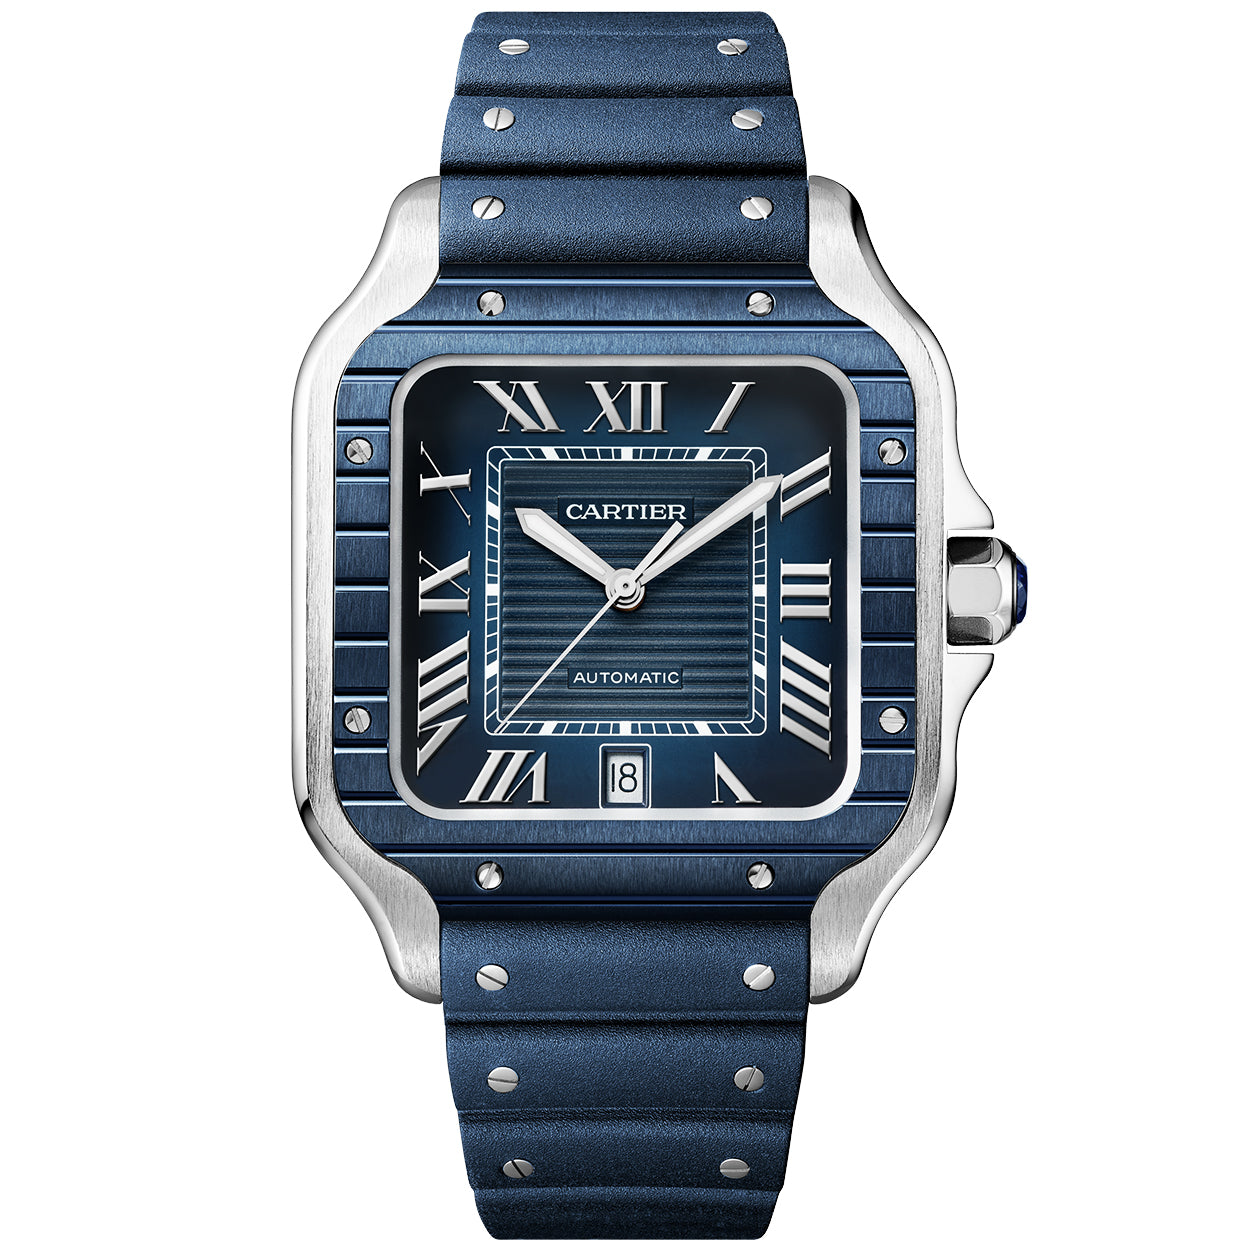 Santos de Cartier Large Steel & Blue PVD Dial Men's Automatic Watch